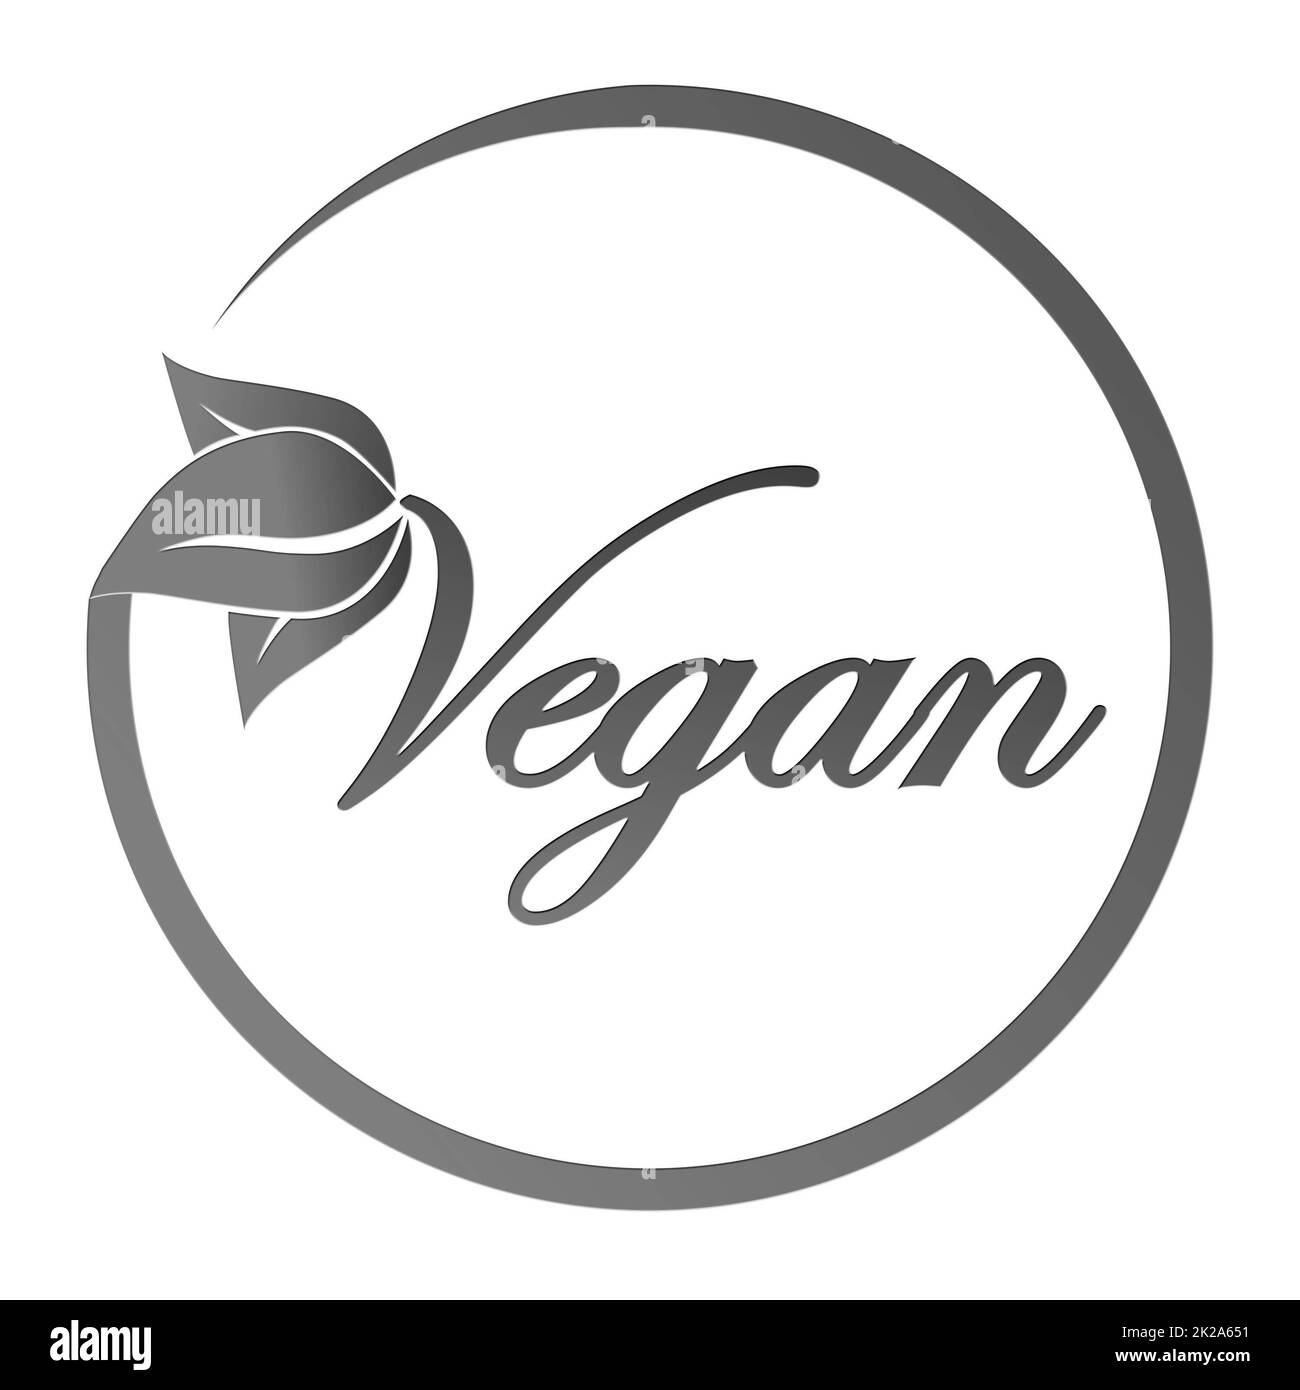 Text Logo Vegan Concept - Vegan food Diet Icon - scritte grigie in stile trendy con elementi di piante fogliari e cornice - isolate su sfondo bianco Foto Stock